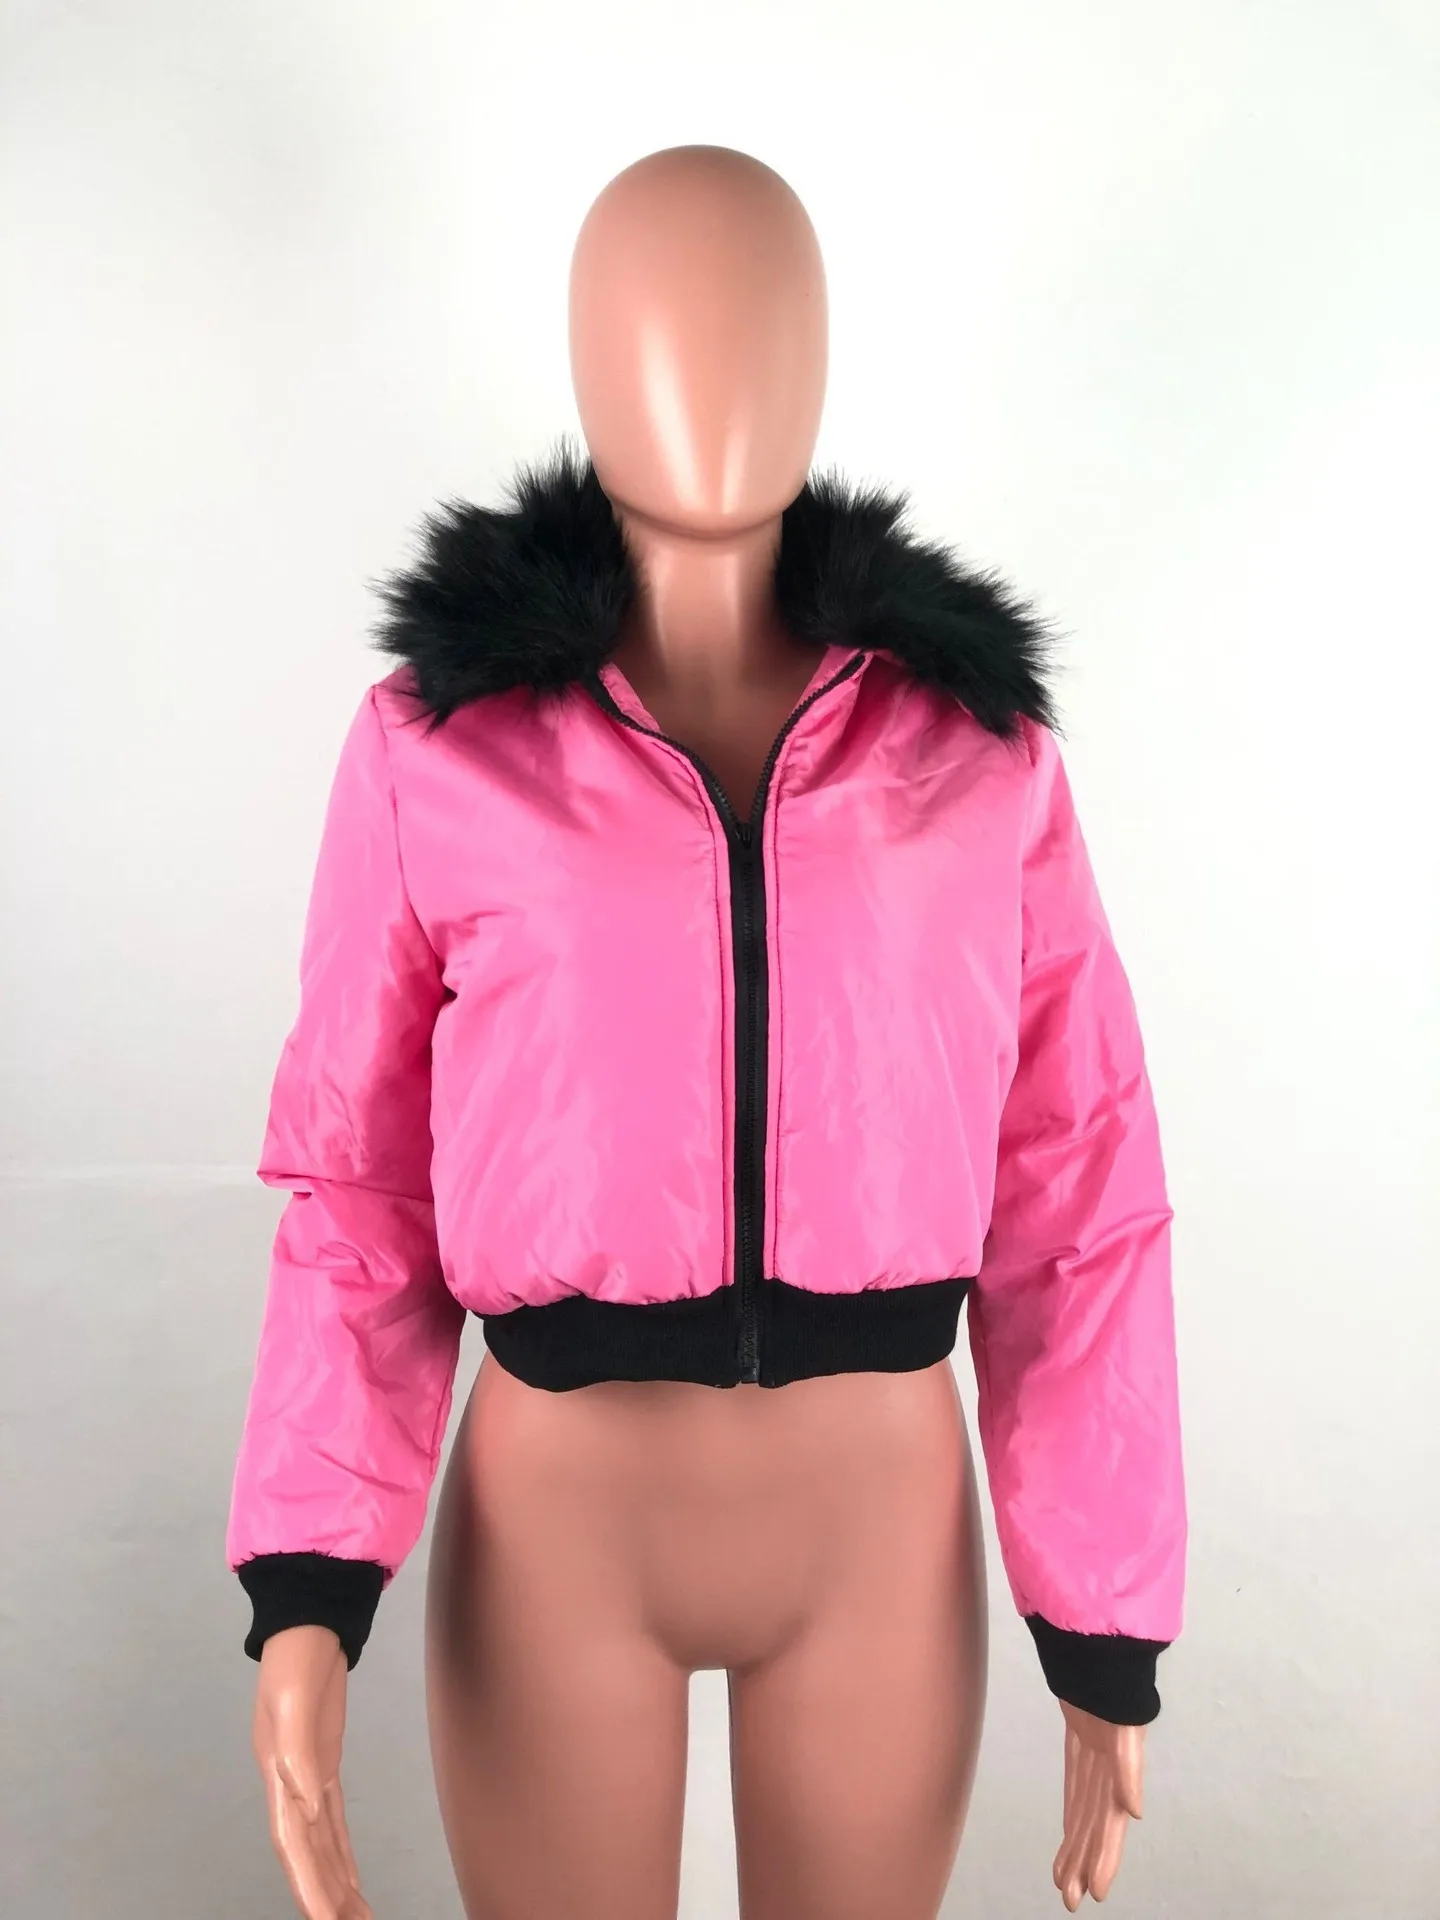 ANJAMANOR Fashion Winter Jacket Women Crop Bubble Coat with Faux Fur Collar Plus Size Puffer Overcoat Windbreaker D30-BZ69